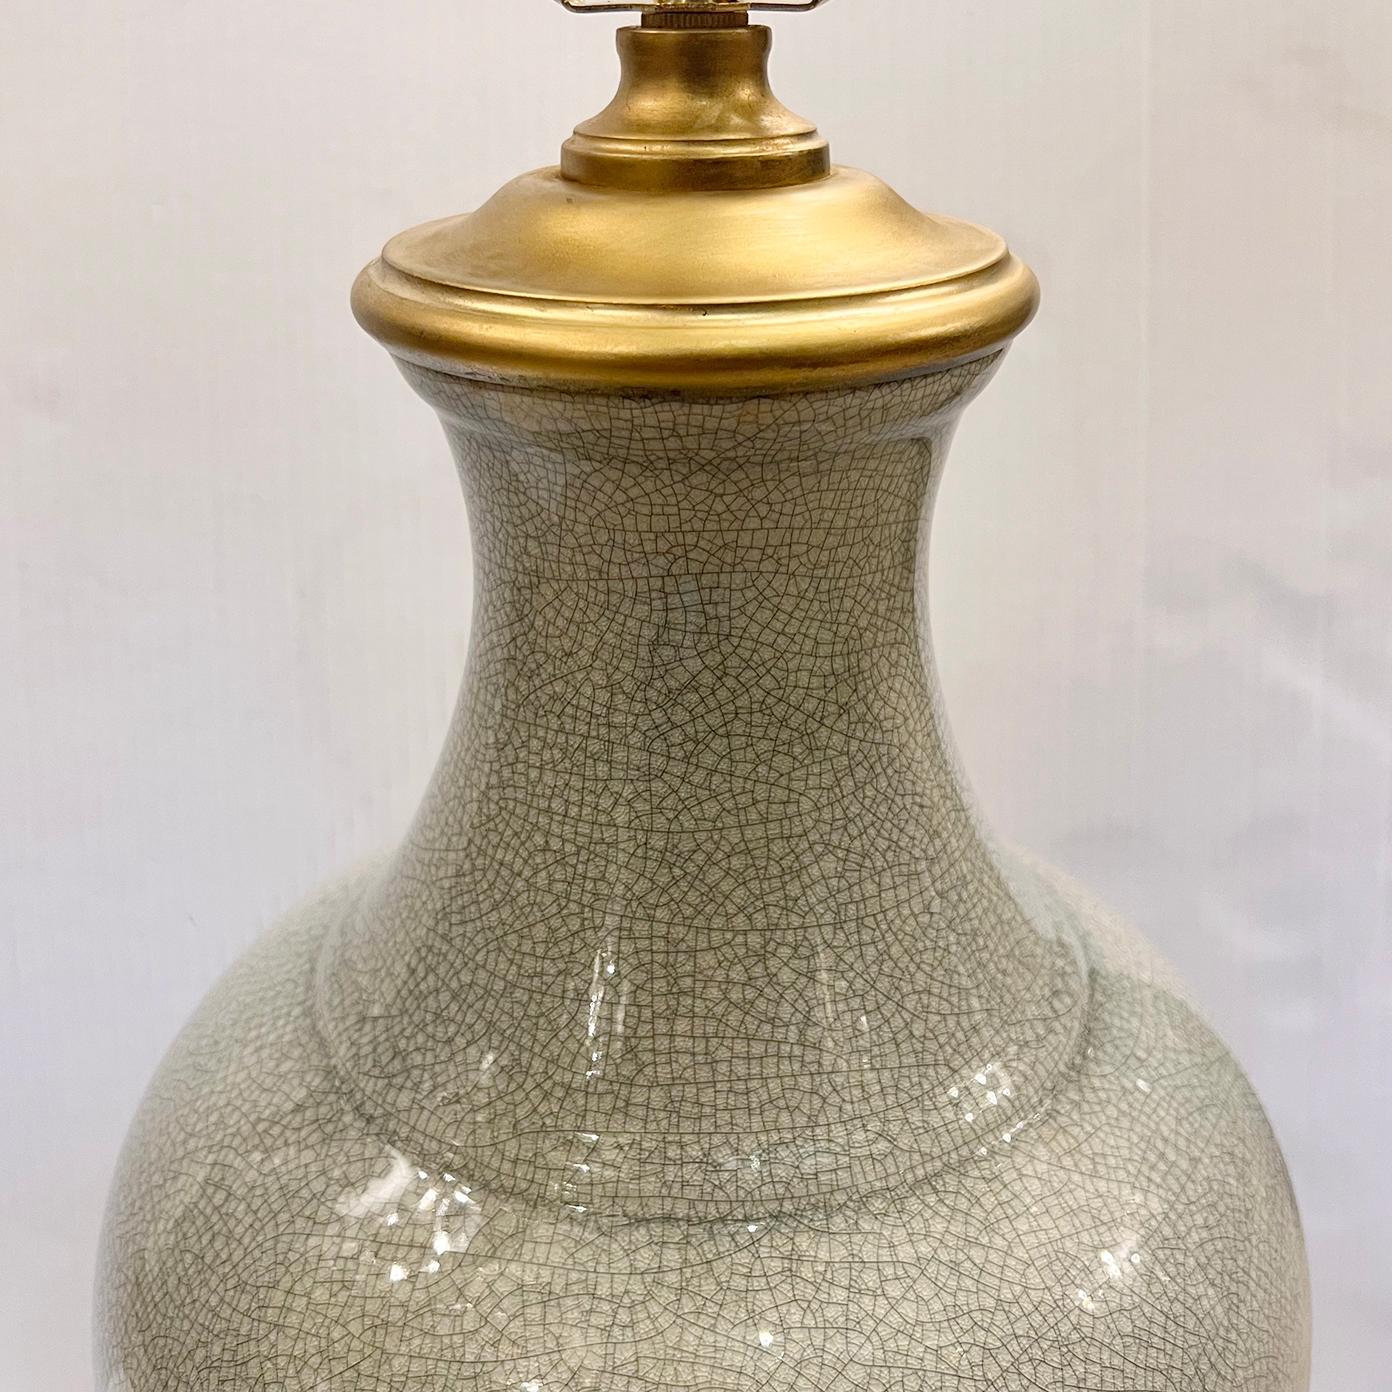 Eine italienische Tischlampe aus Craquelé-Porzellan mit vergoldetem Sockel, circa 1960er Jahre.

Abmessungen:
Höhe des Körpers: 20